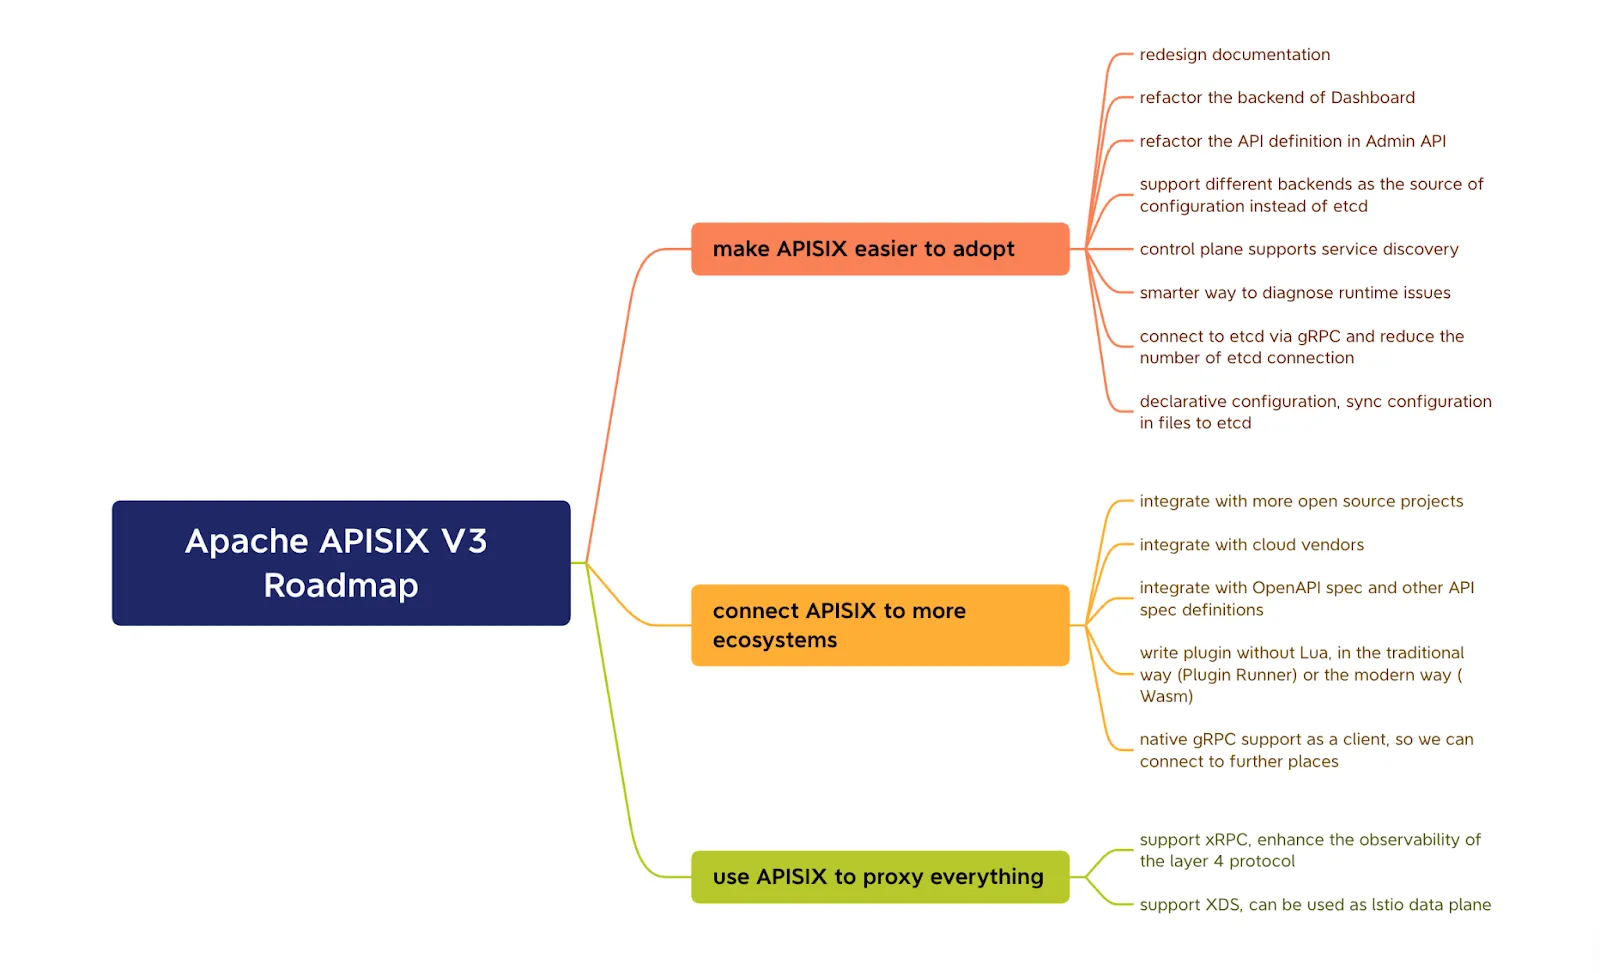 Apache APISIX V3.0 Roadmap